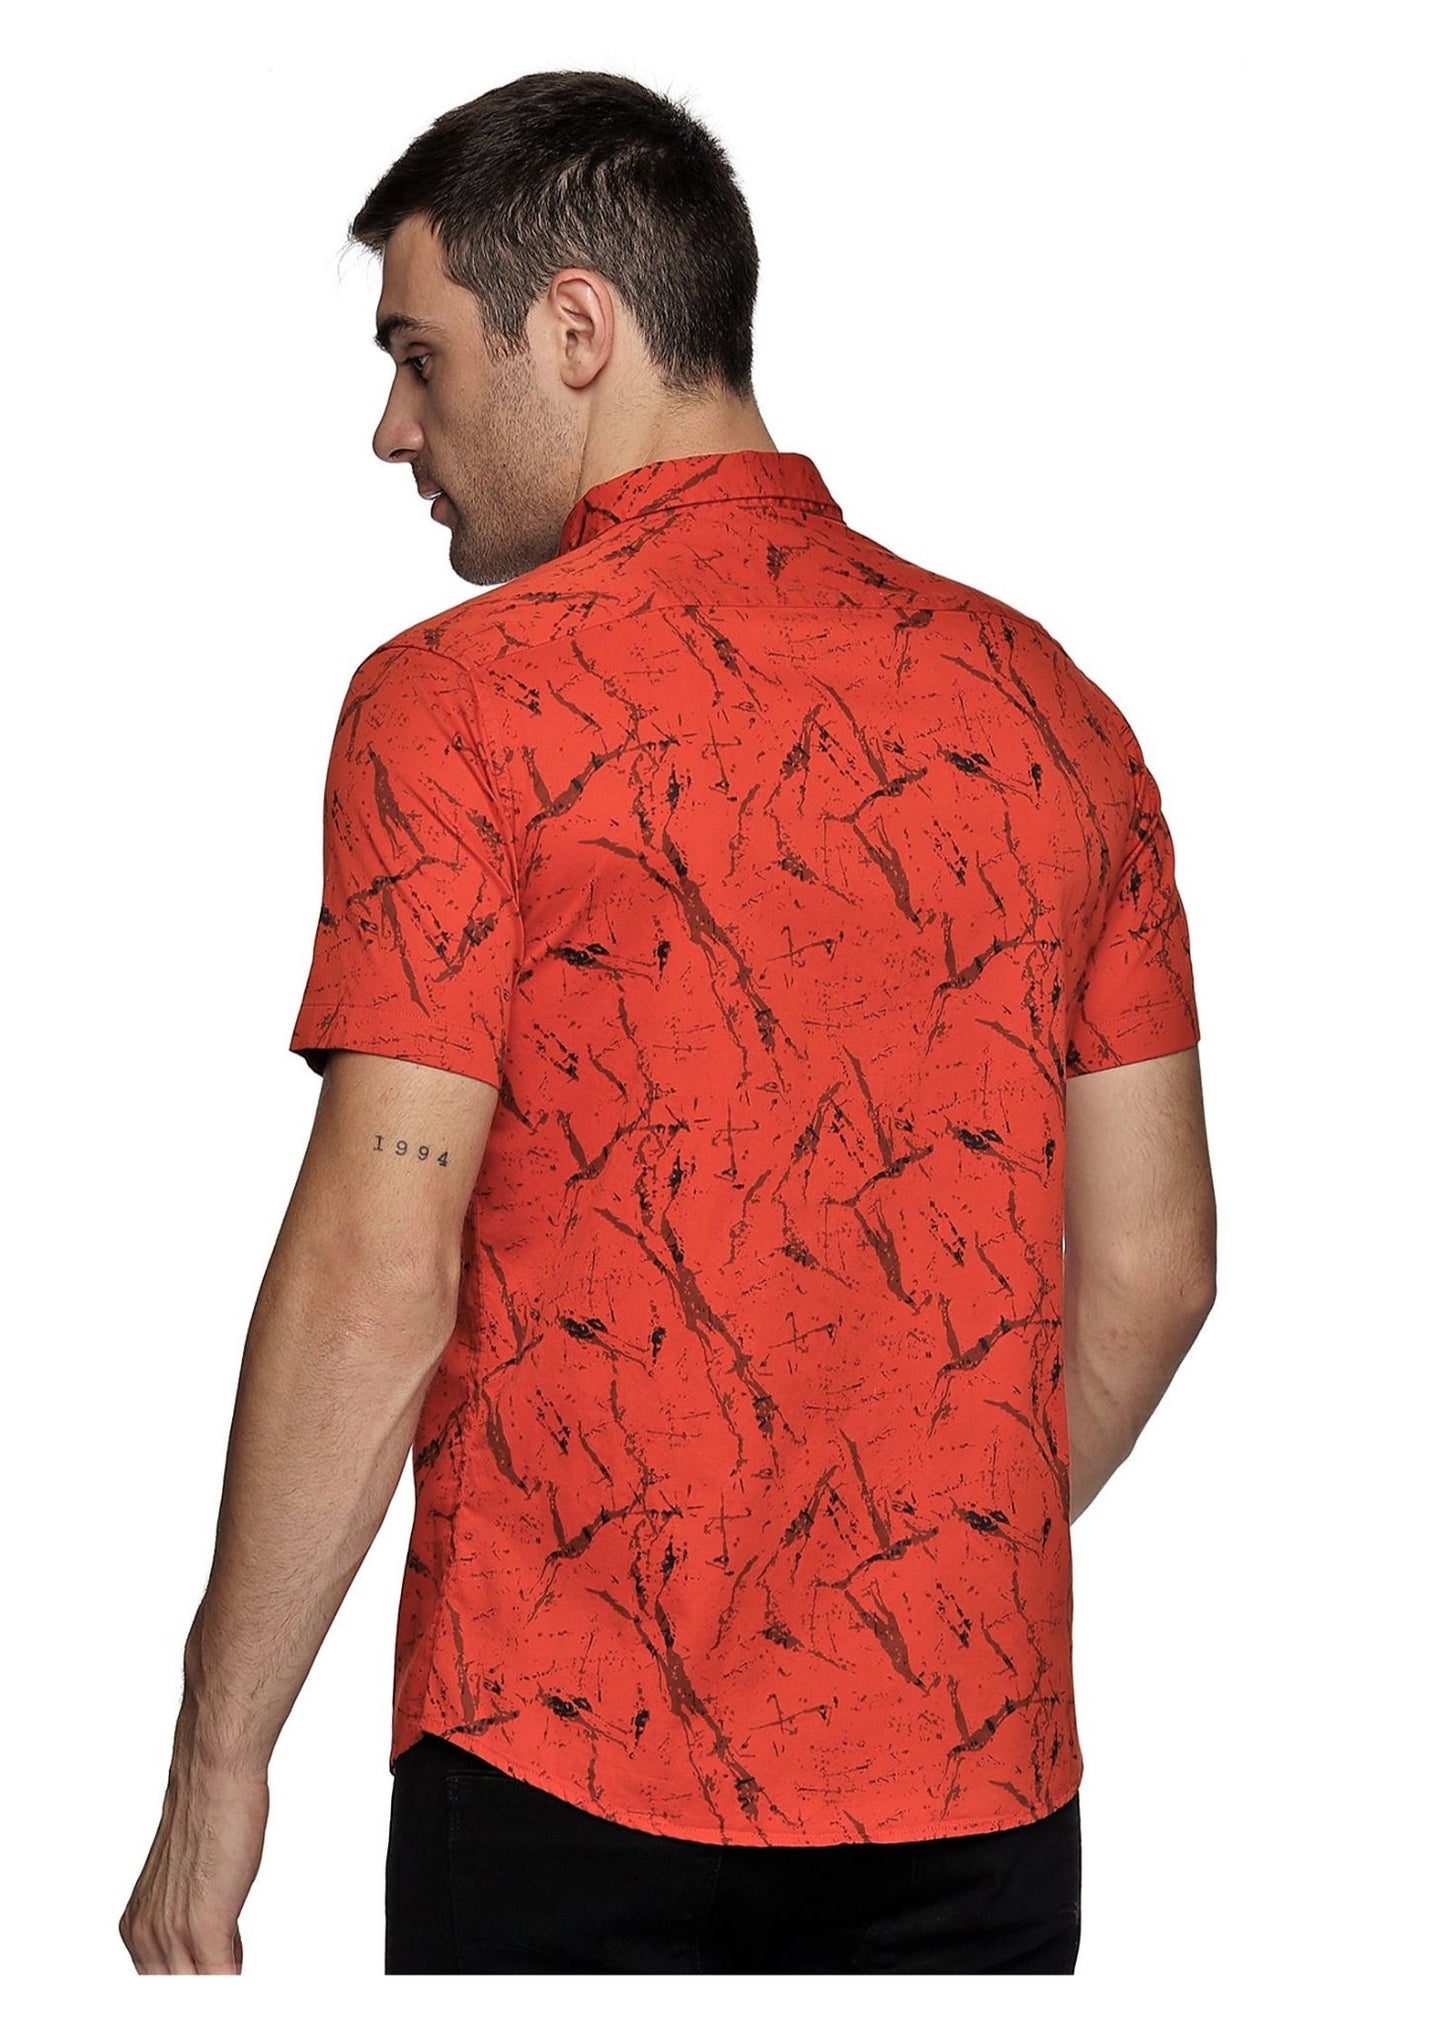 Orange Marbel Printed Shirt - Tusok